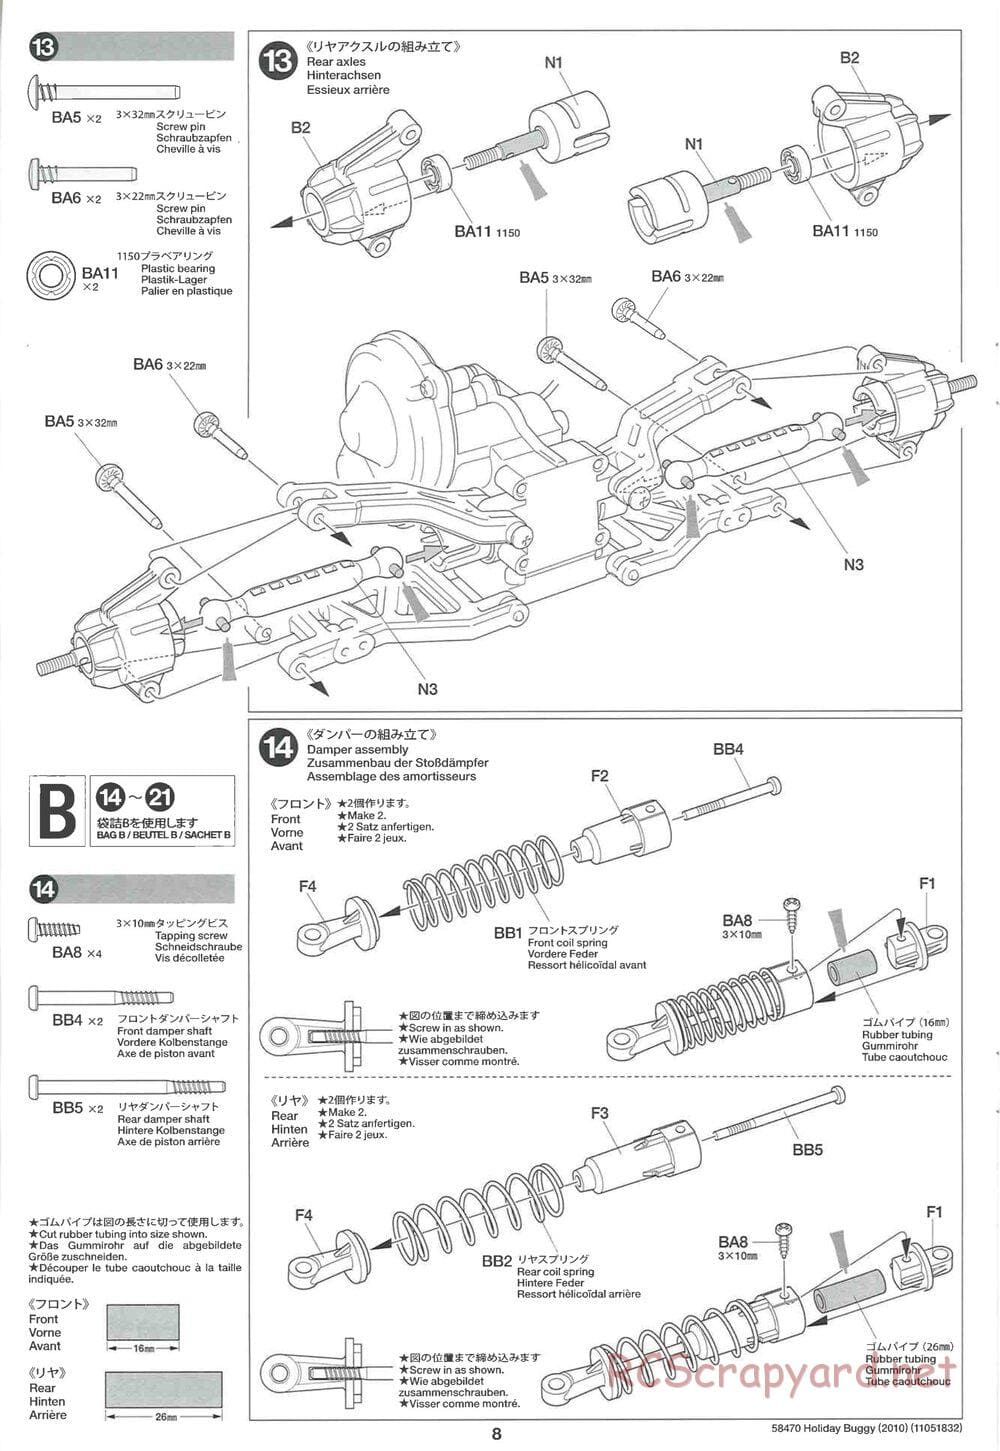 Tamiya - Holiday Buggy 2010 Chassis - Manual - Page 8